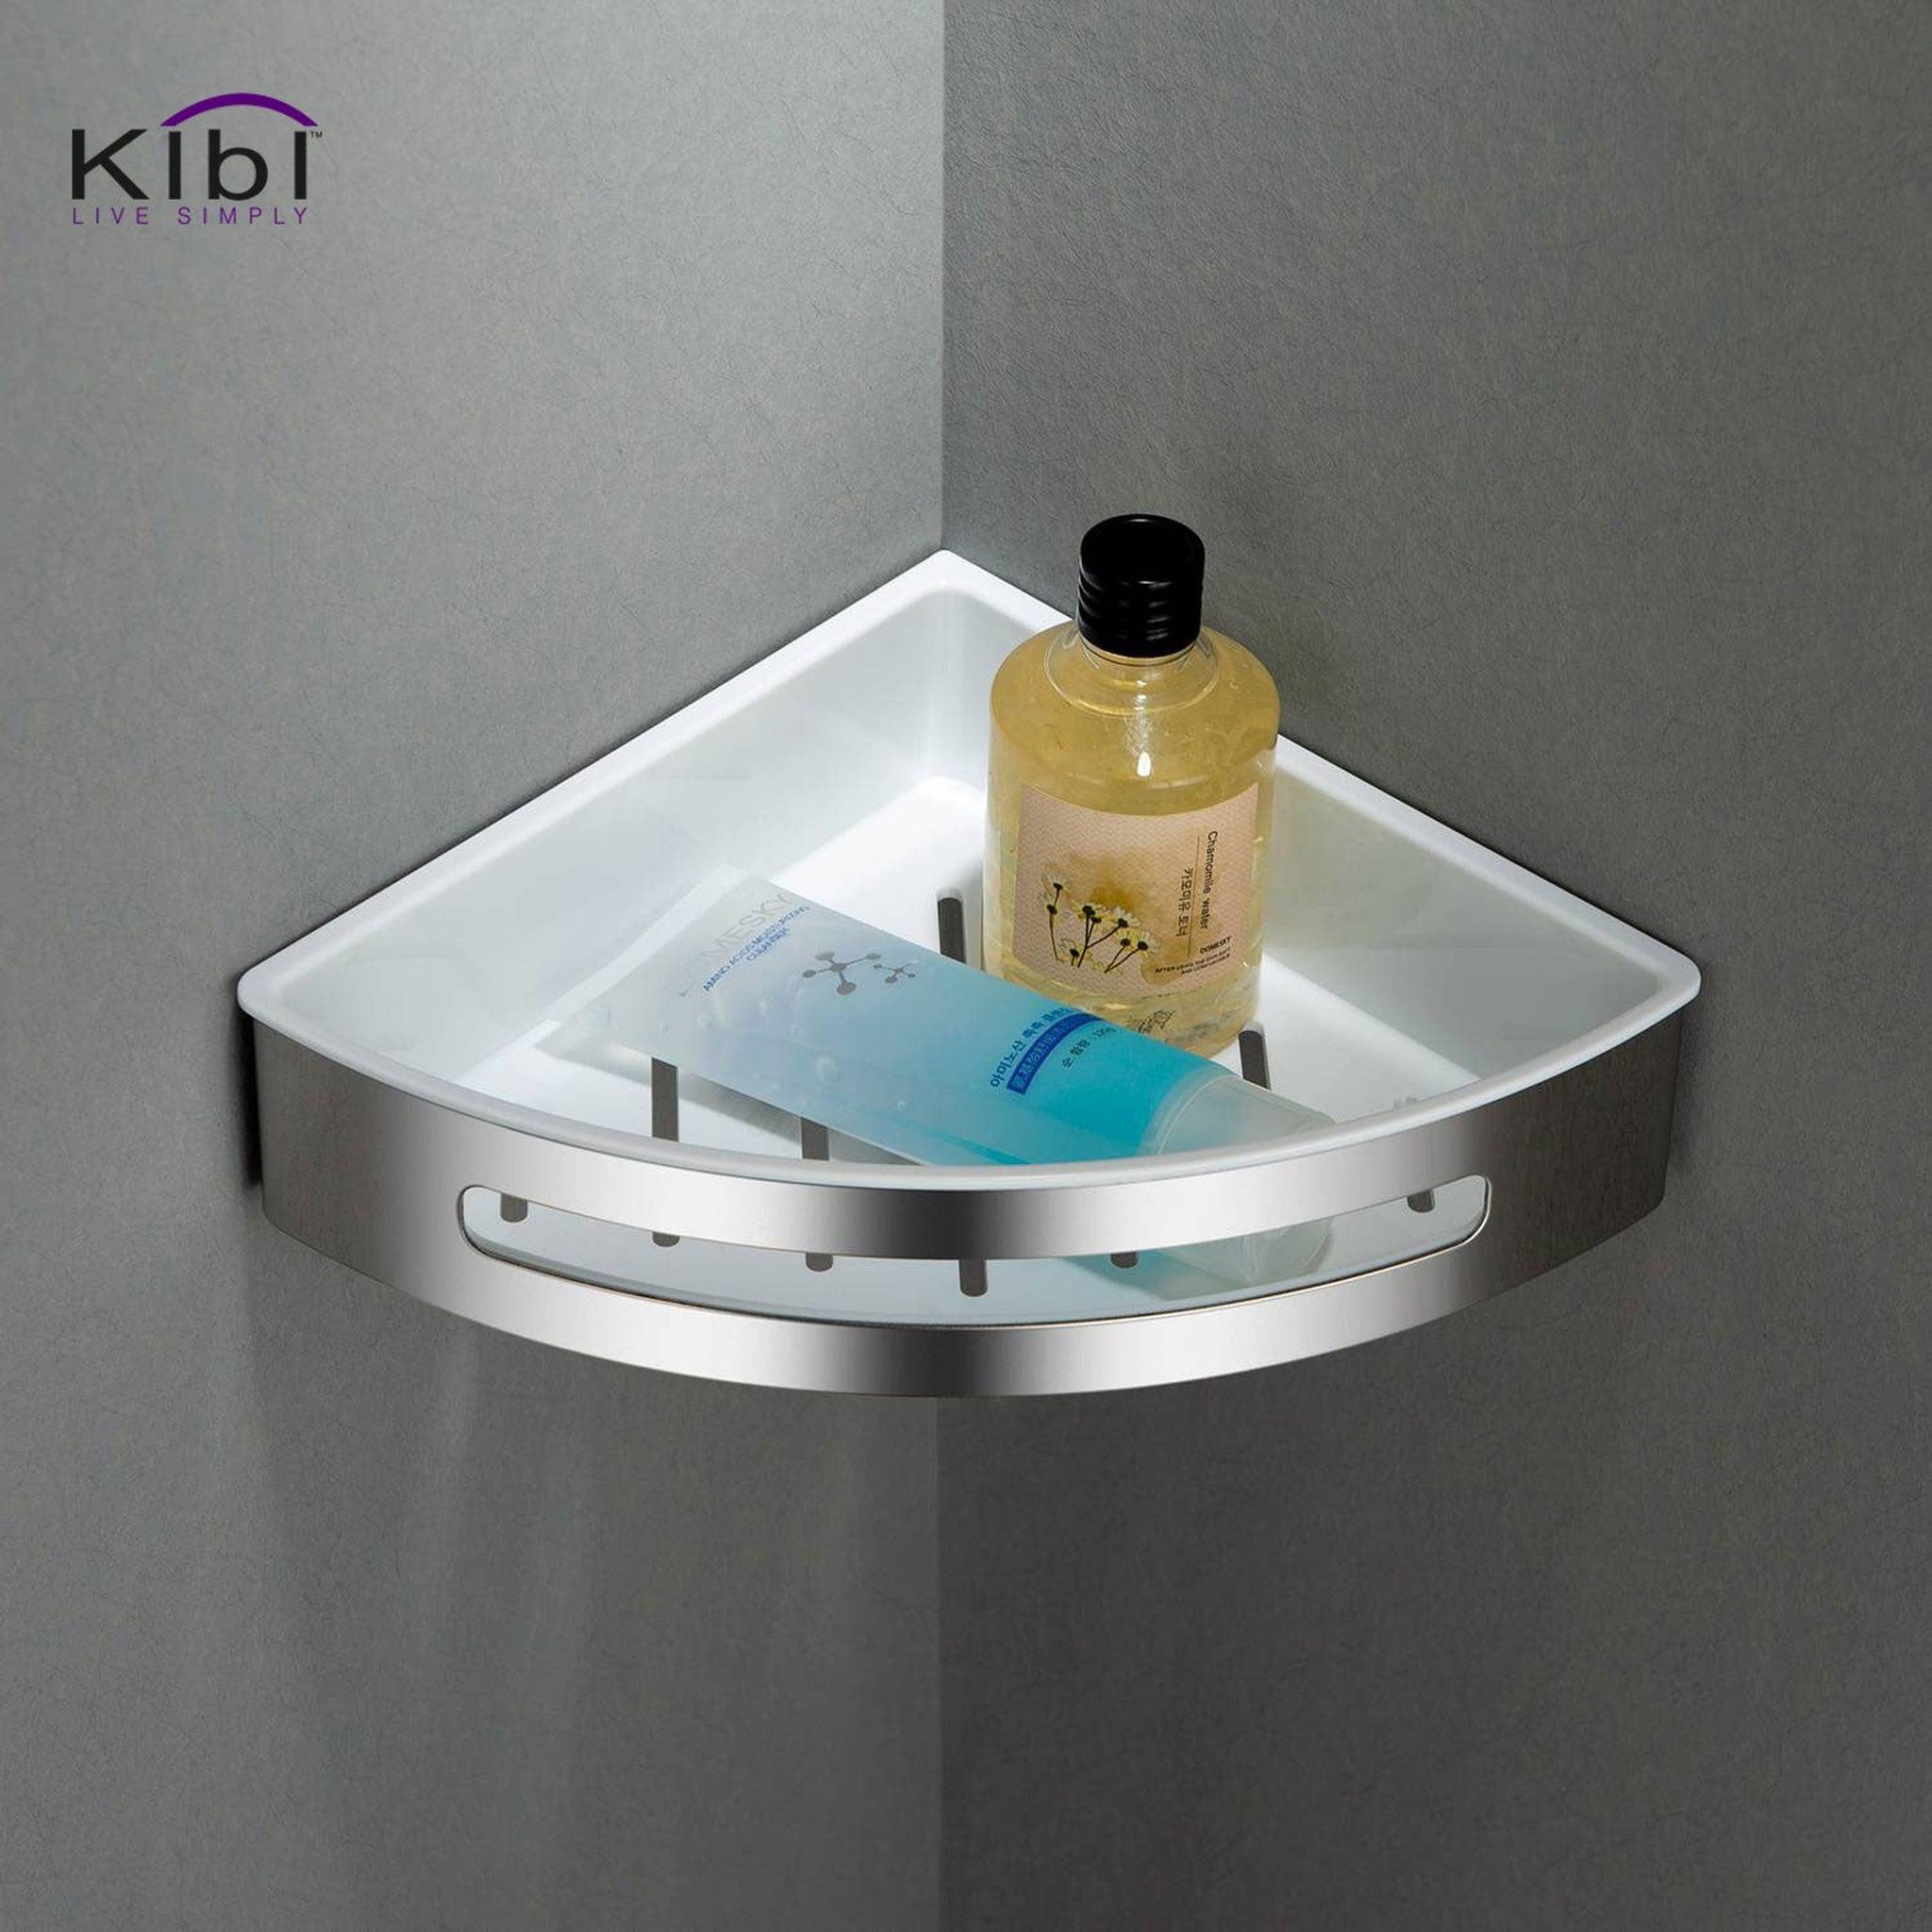 KIBI, KIBI Deco 8" x 2" Bathroom Corner Basket in Chrome Finish